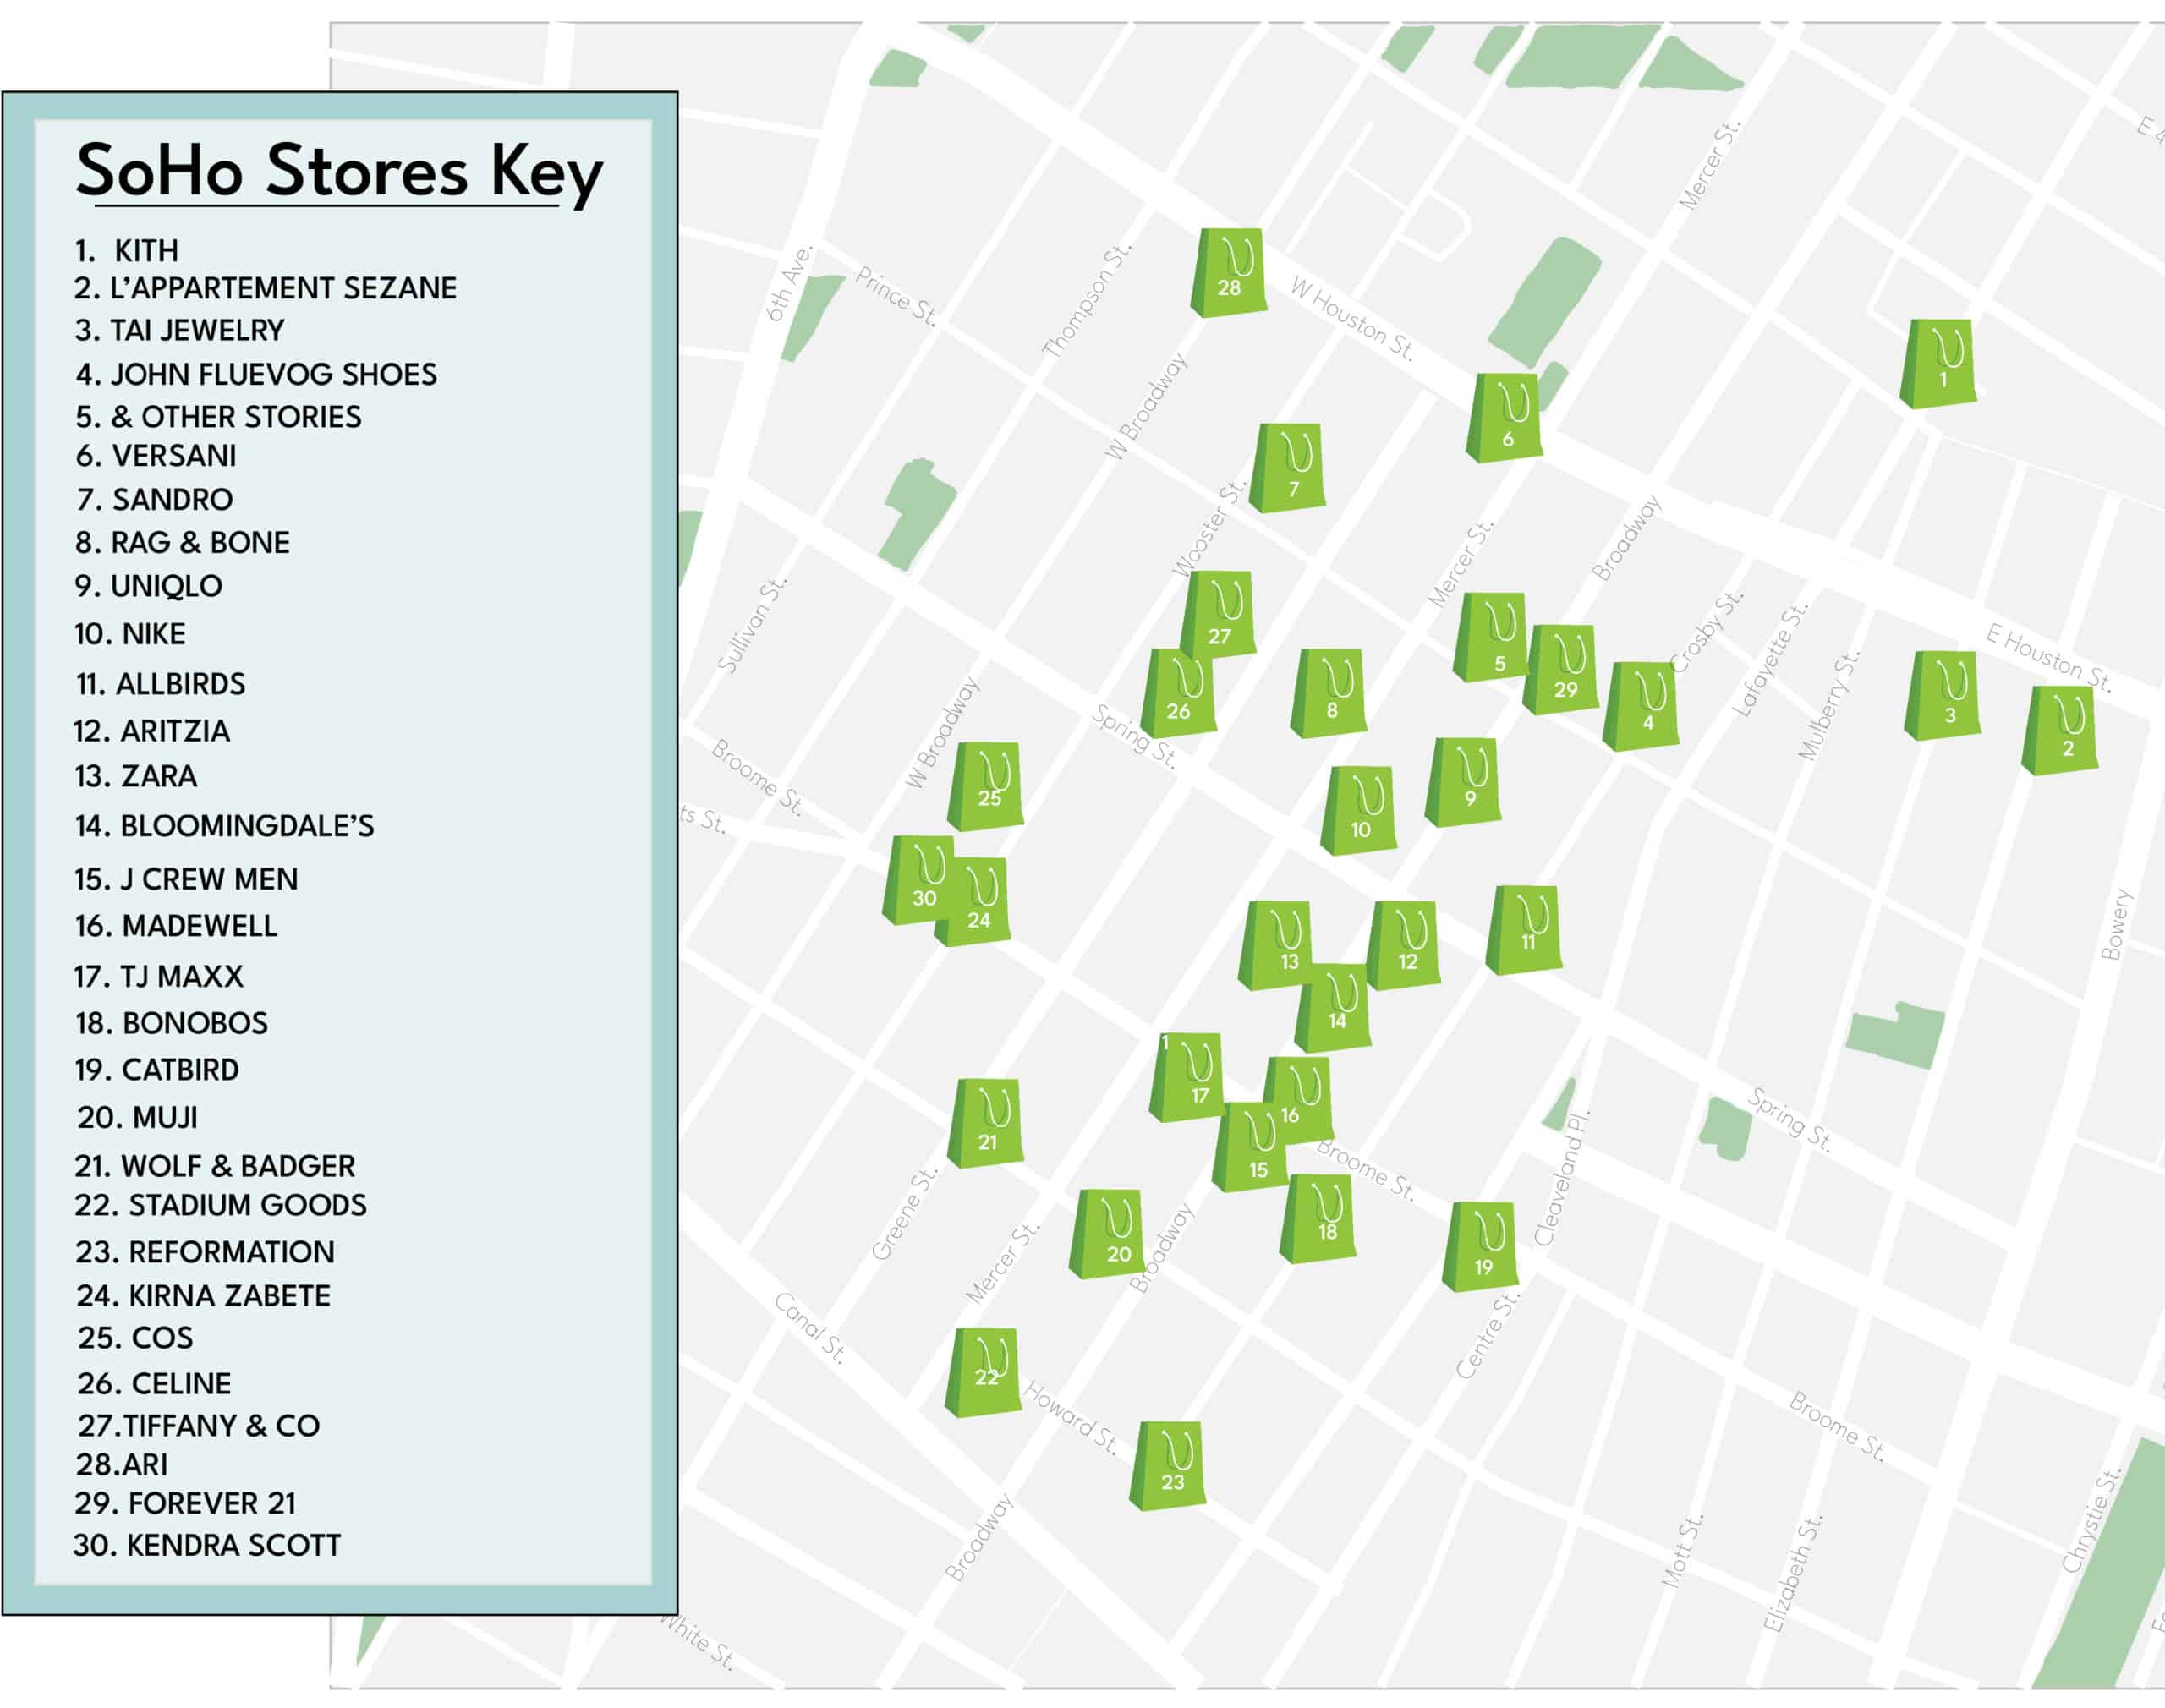 Soho shopping map
Map of best stores soho